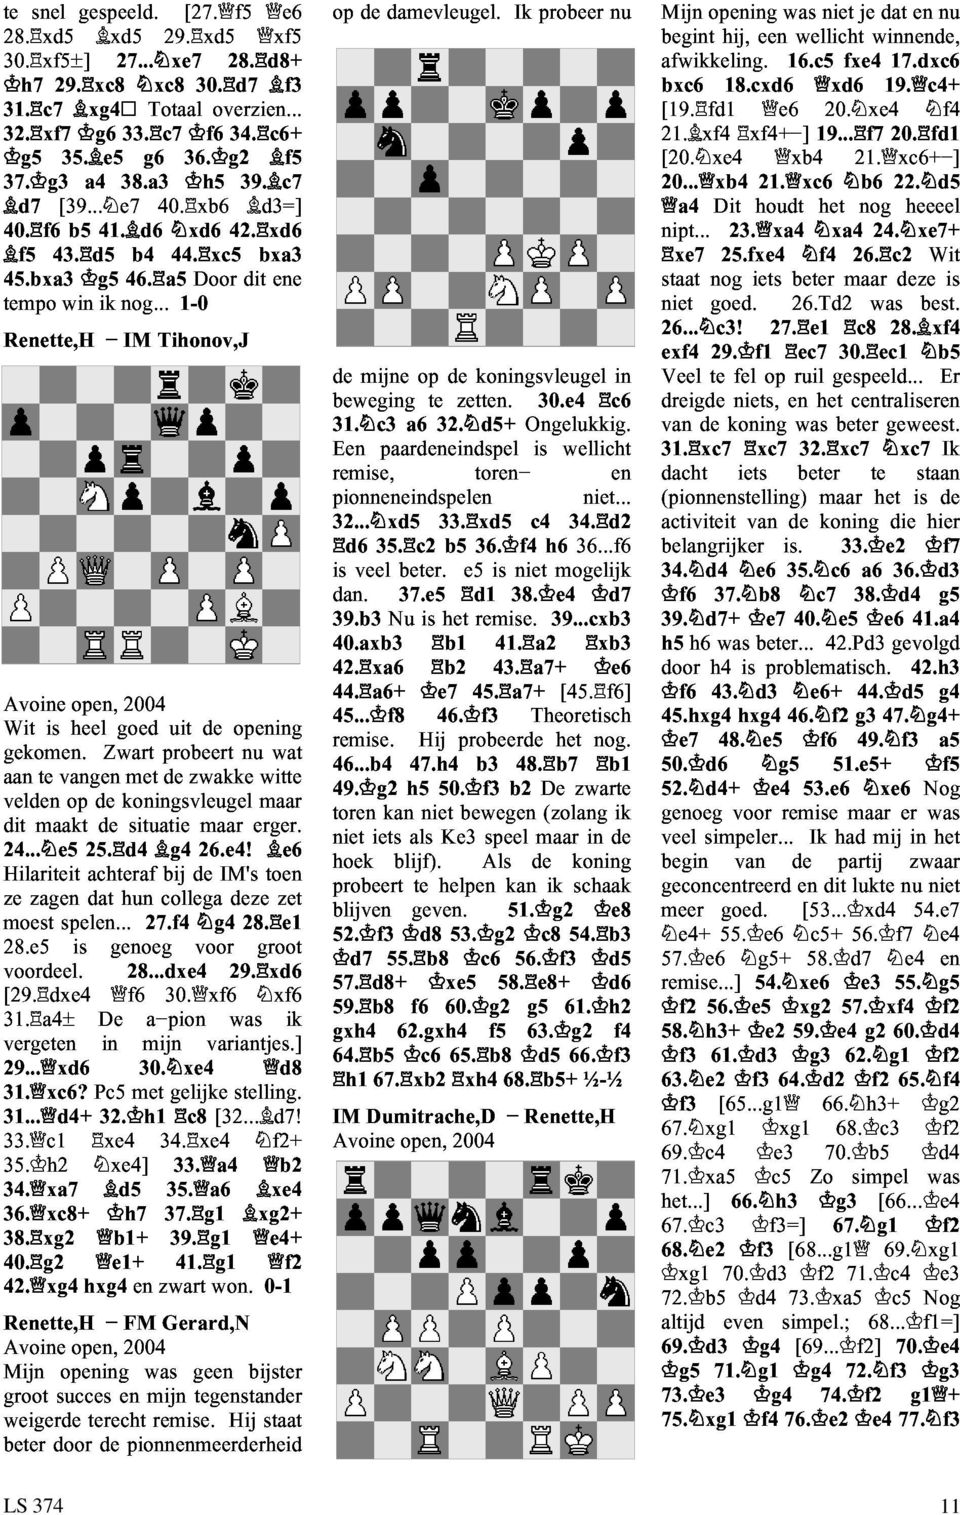 aan velden is heel open, goed 2004 dit te vangen Zwart met probeert de uit zwakke de opening 24... e5 maakt op 25. d4 de koningsvleugel situatie g4 26.e4! maar nu erger.